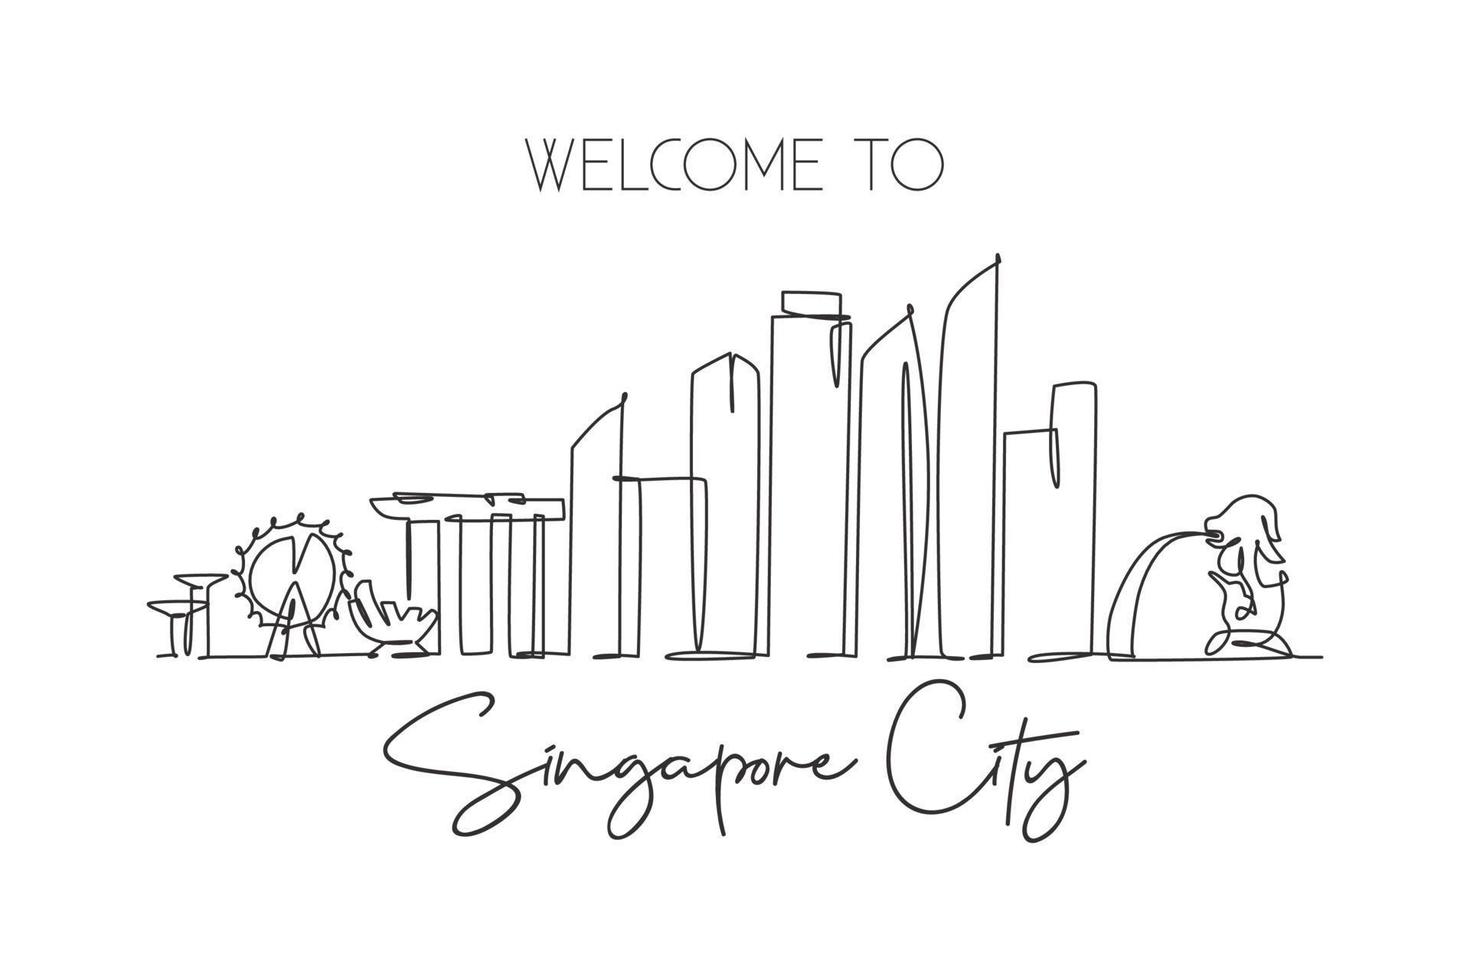 dibujo de una sola línea continua del horizonte de la ciudad de singapur. famoso raspador y paisaje de la ciudad. concepto de viaje mundial decoración del hogar póster de impresión de pared art. Ilustración de vector de diseño de dibujo de una línea moderna